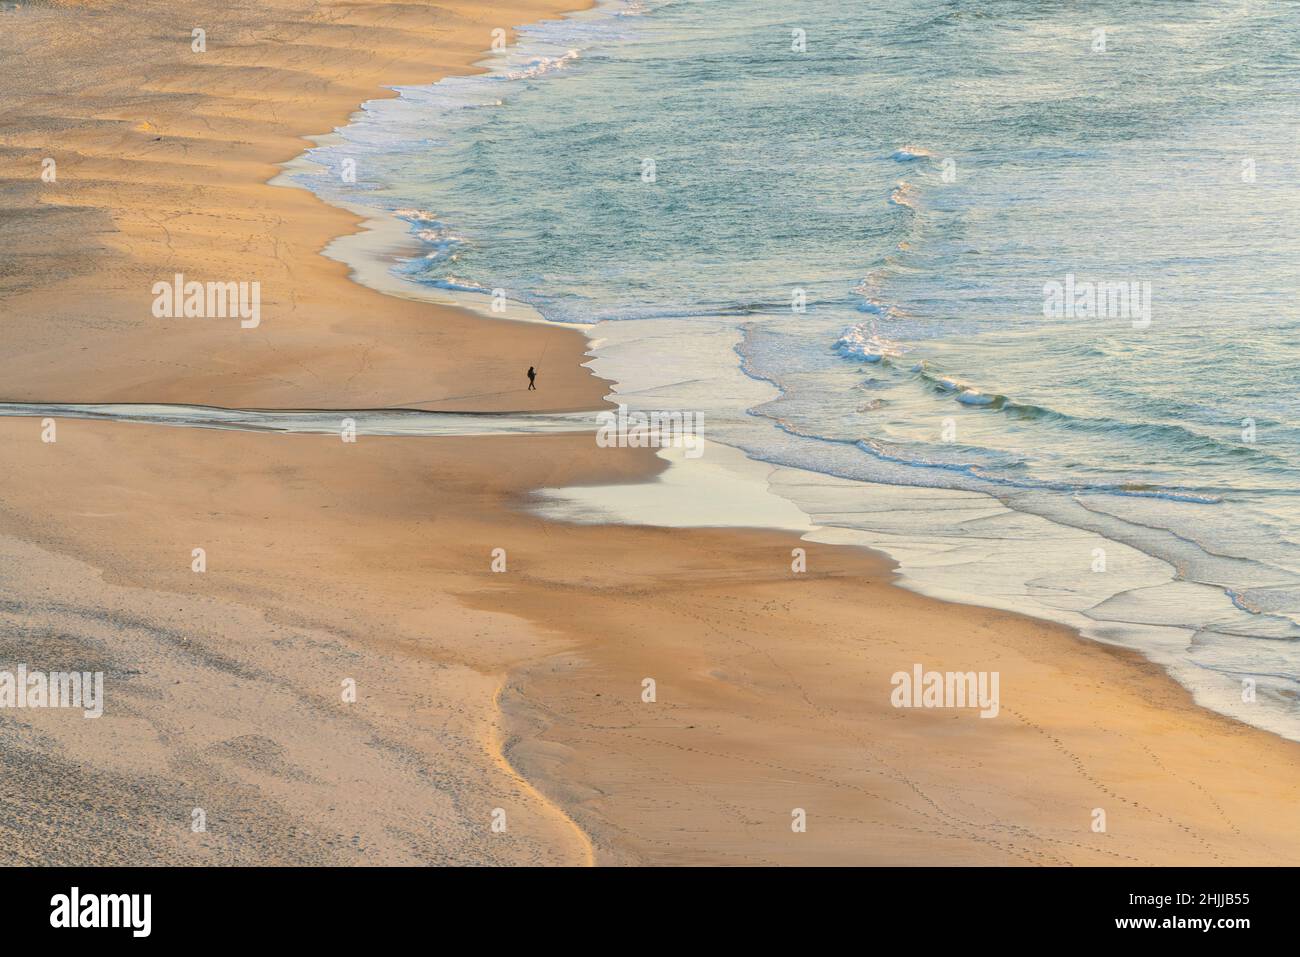 Une personne seule sur une plage Banque D'Images